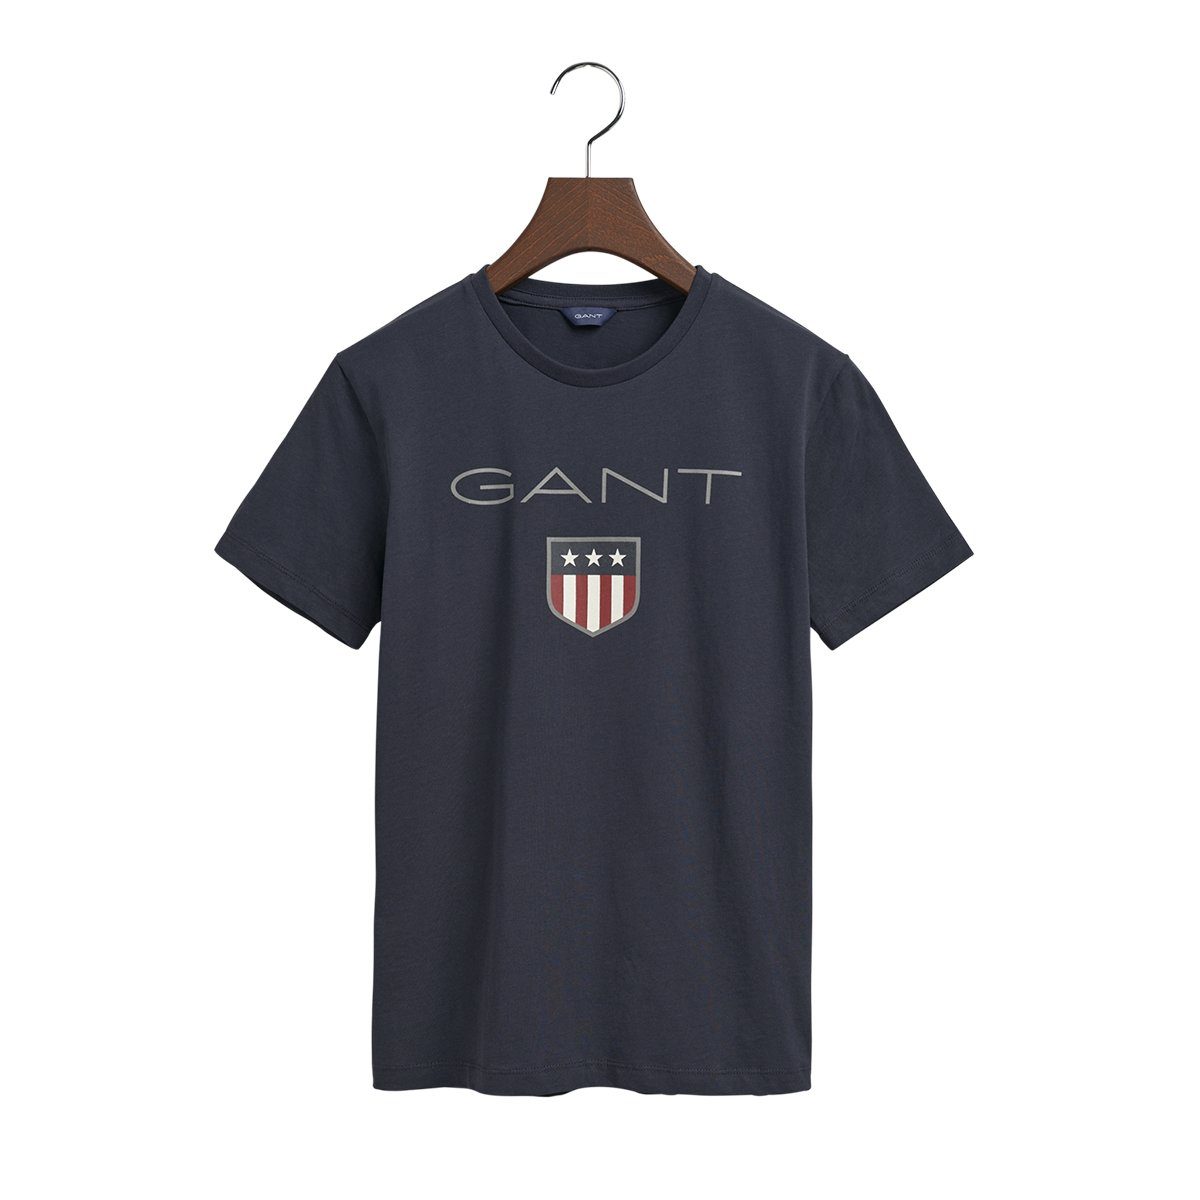 Gant T-Shirt 905114 Kinder Unisex Shirt T-Shirt SHIELD SS Dunkelblau